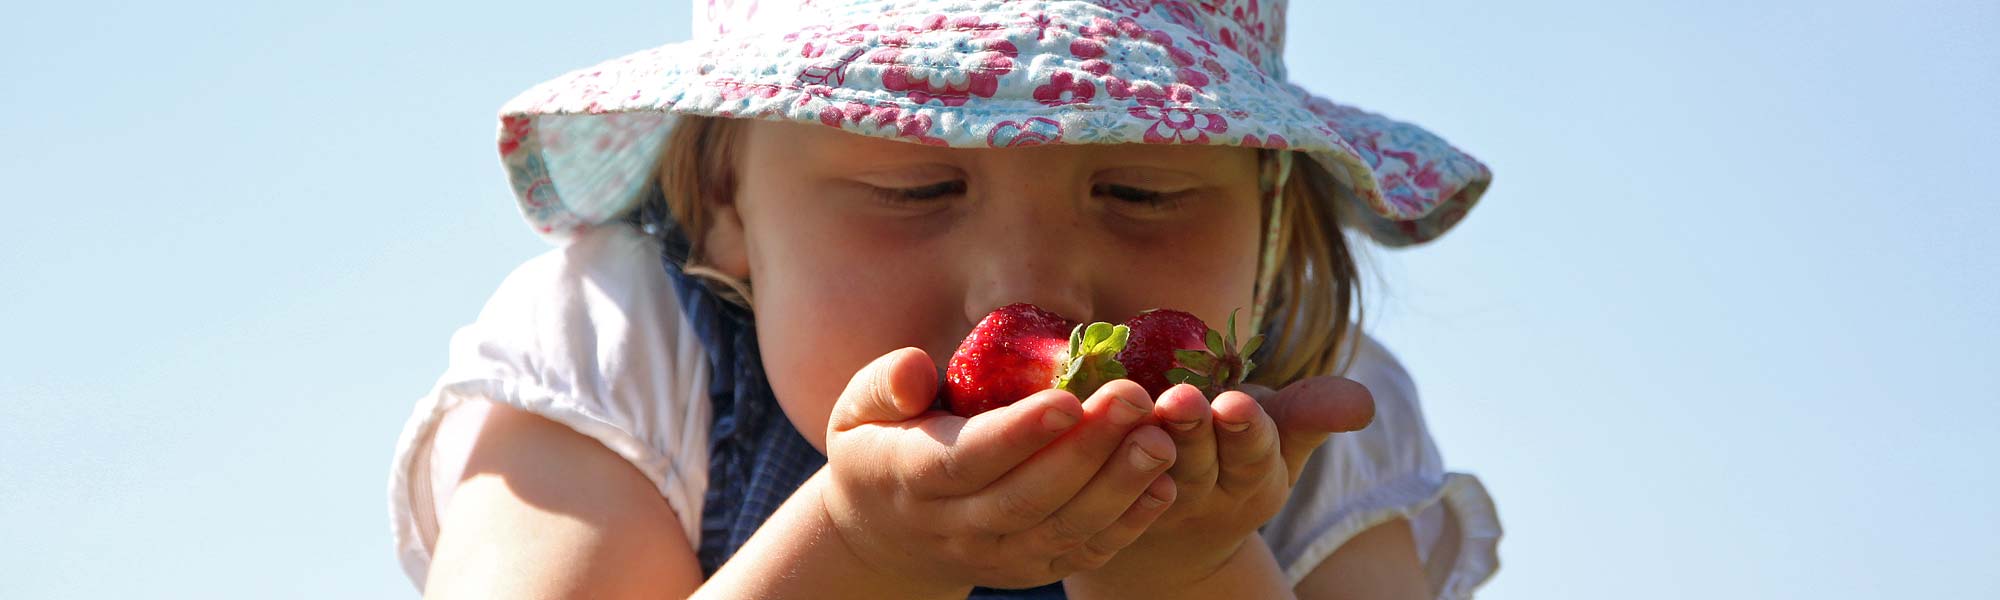 Kind riecht an Erdbeeren